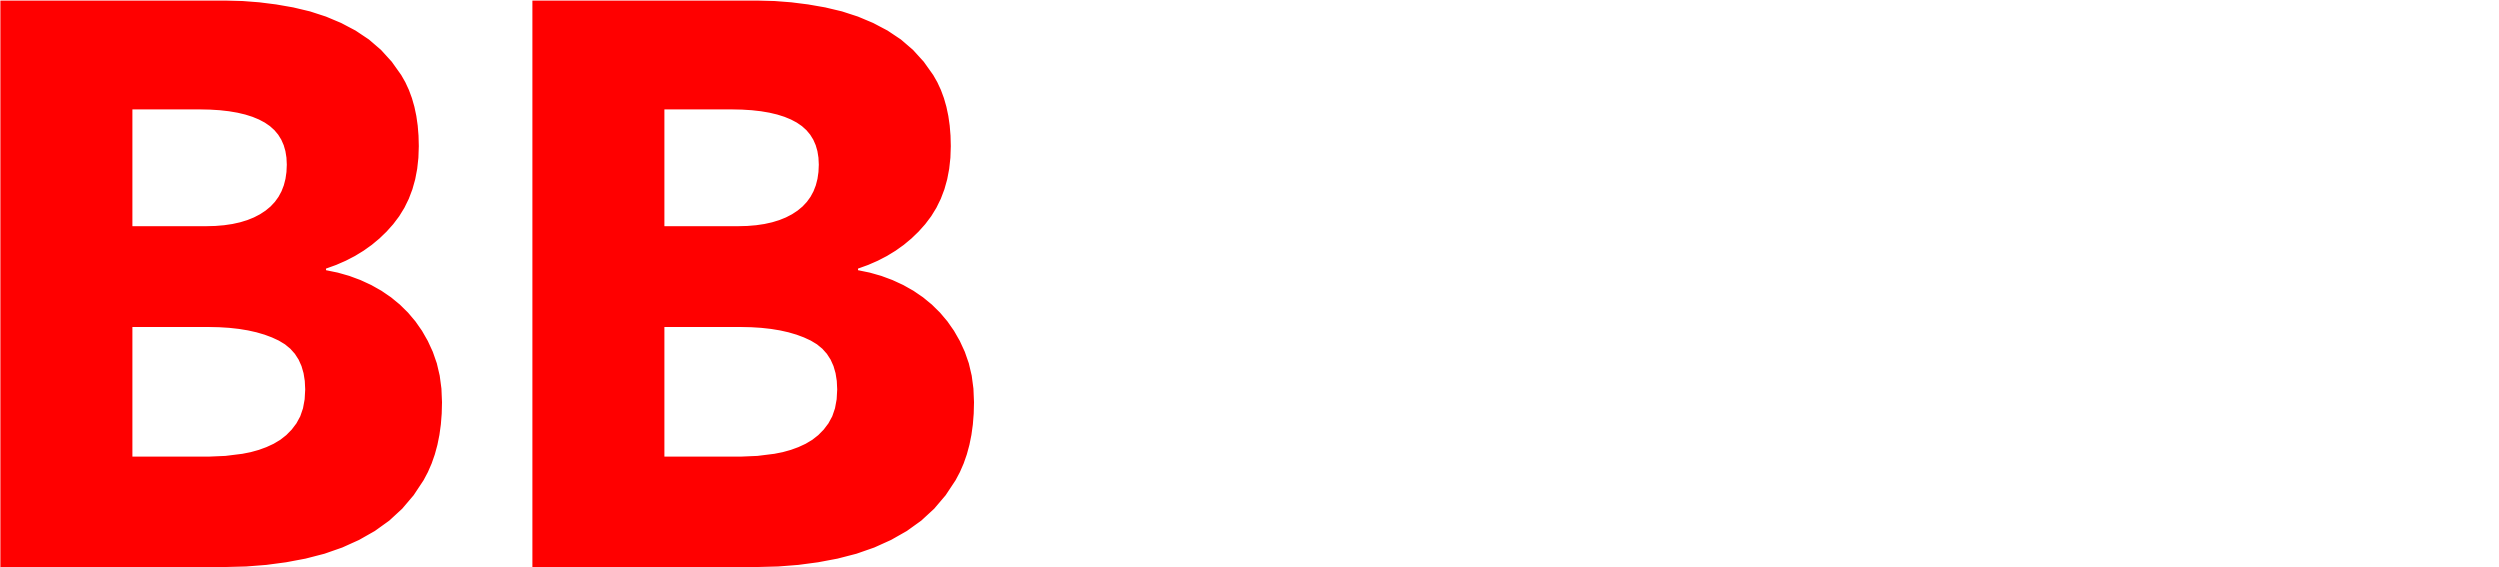 BBEER logo